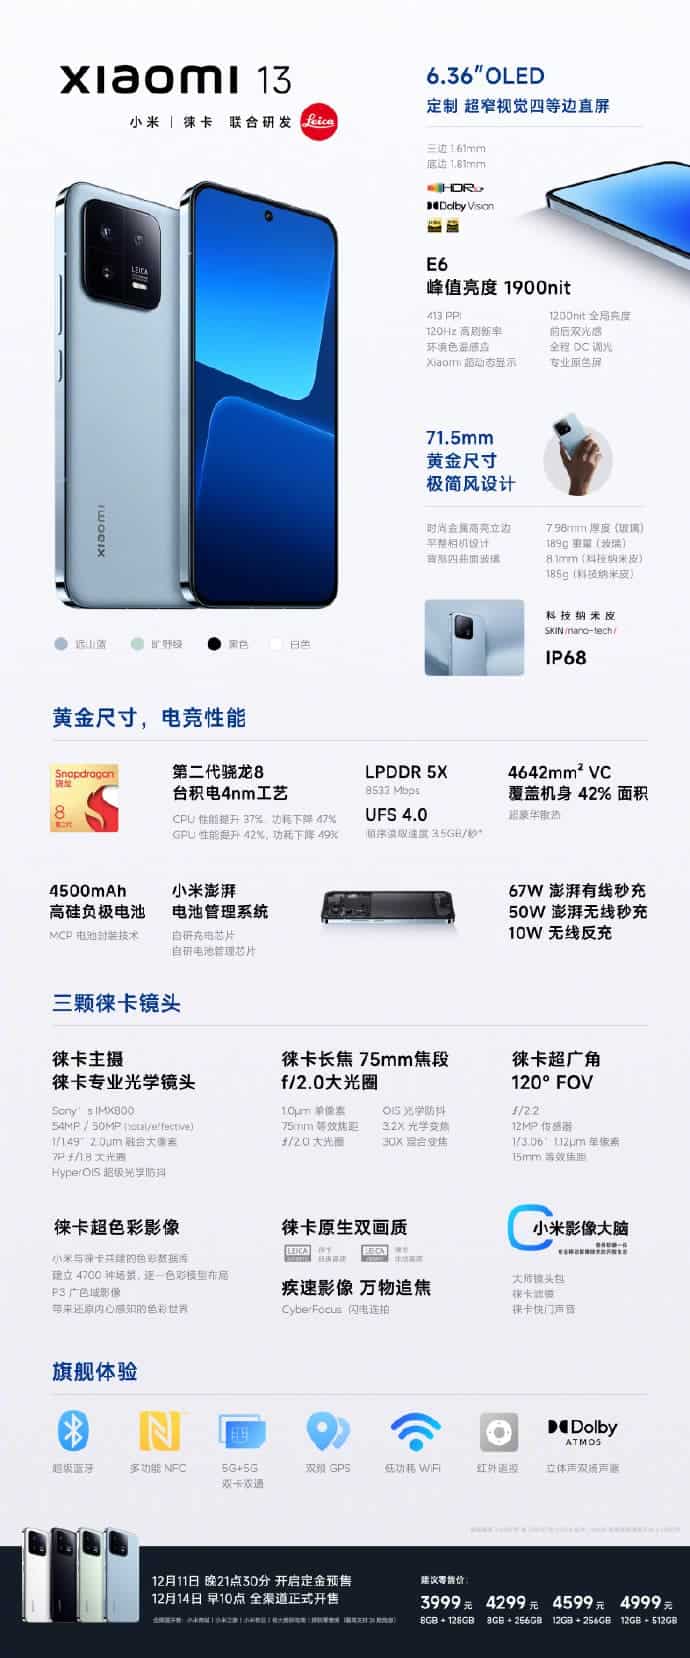 Xiaomi 13 specs